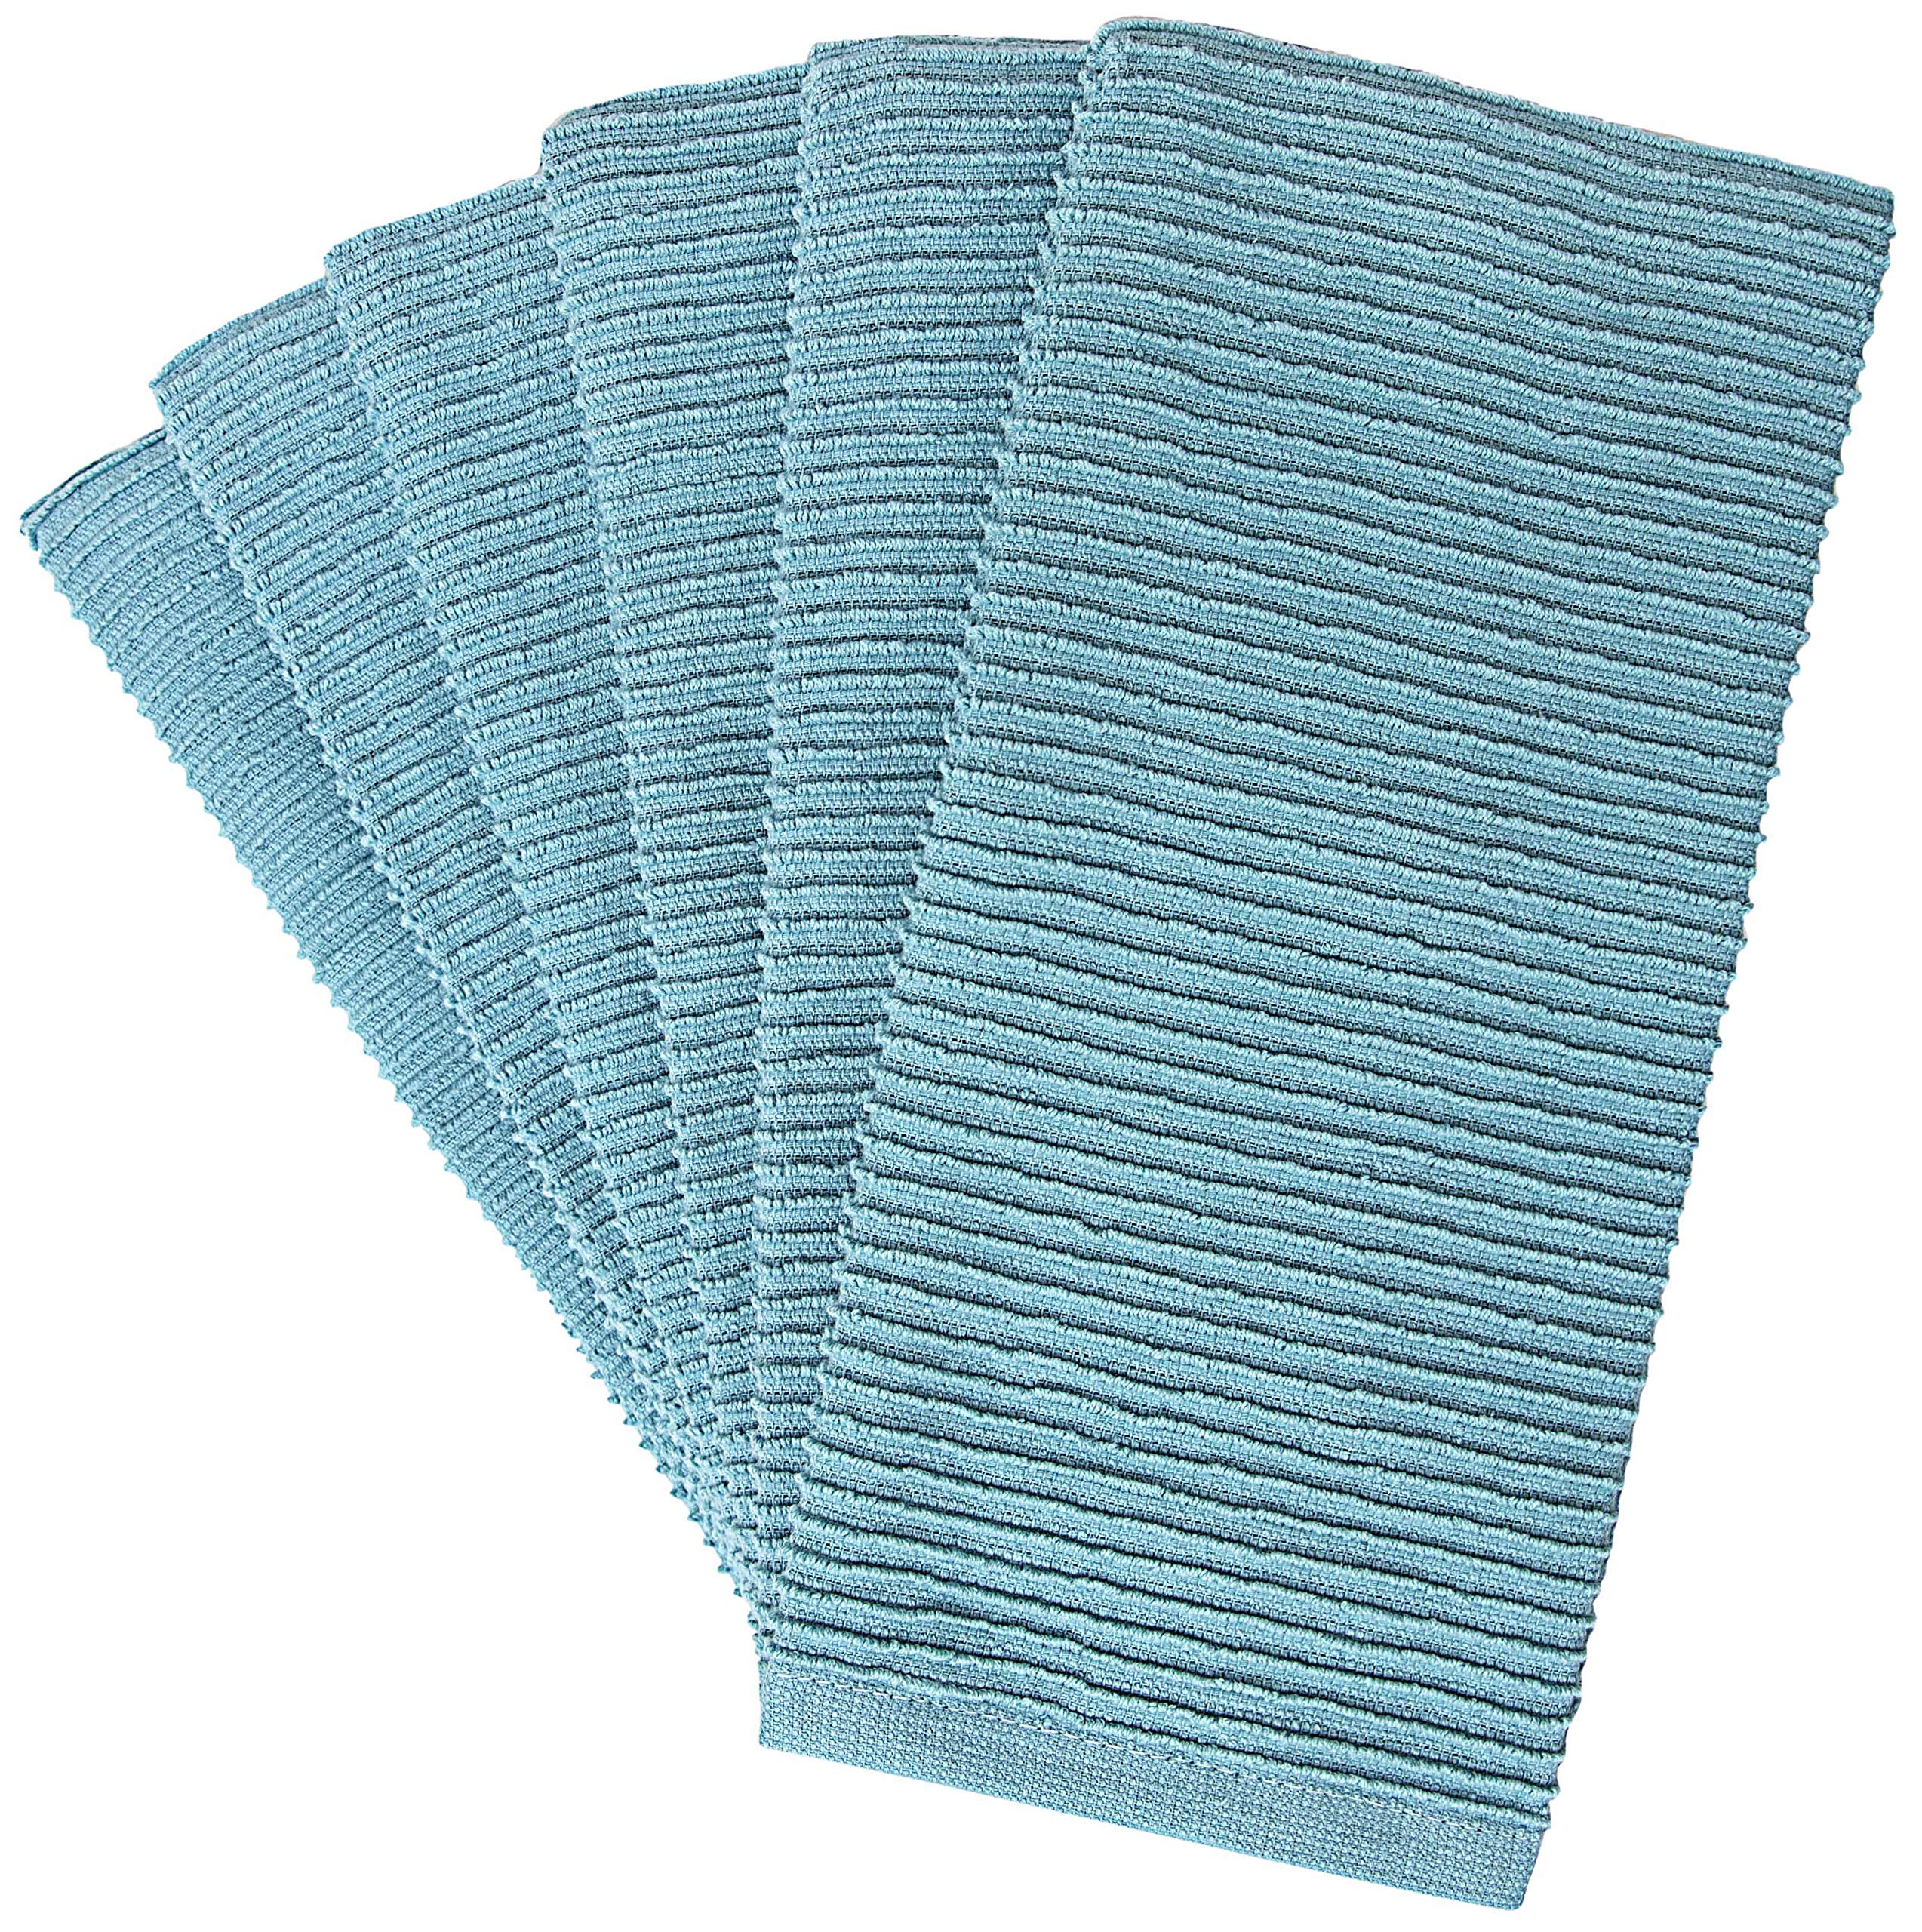 Linteum Textile Kitchen Towel Rag with Blue Stripe - 100% Cotton Kitchen  Towels, Durable Kitchen Hand Towels, 15